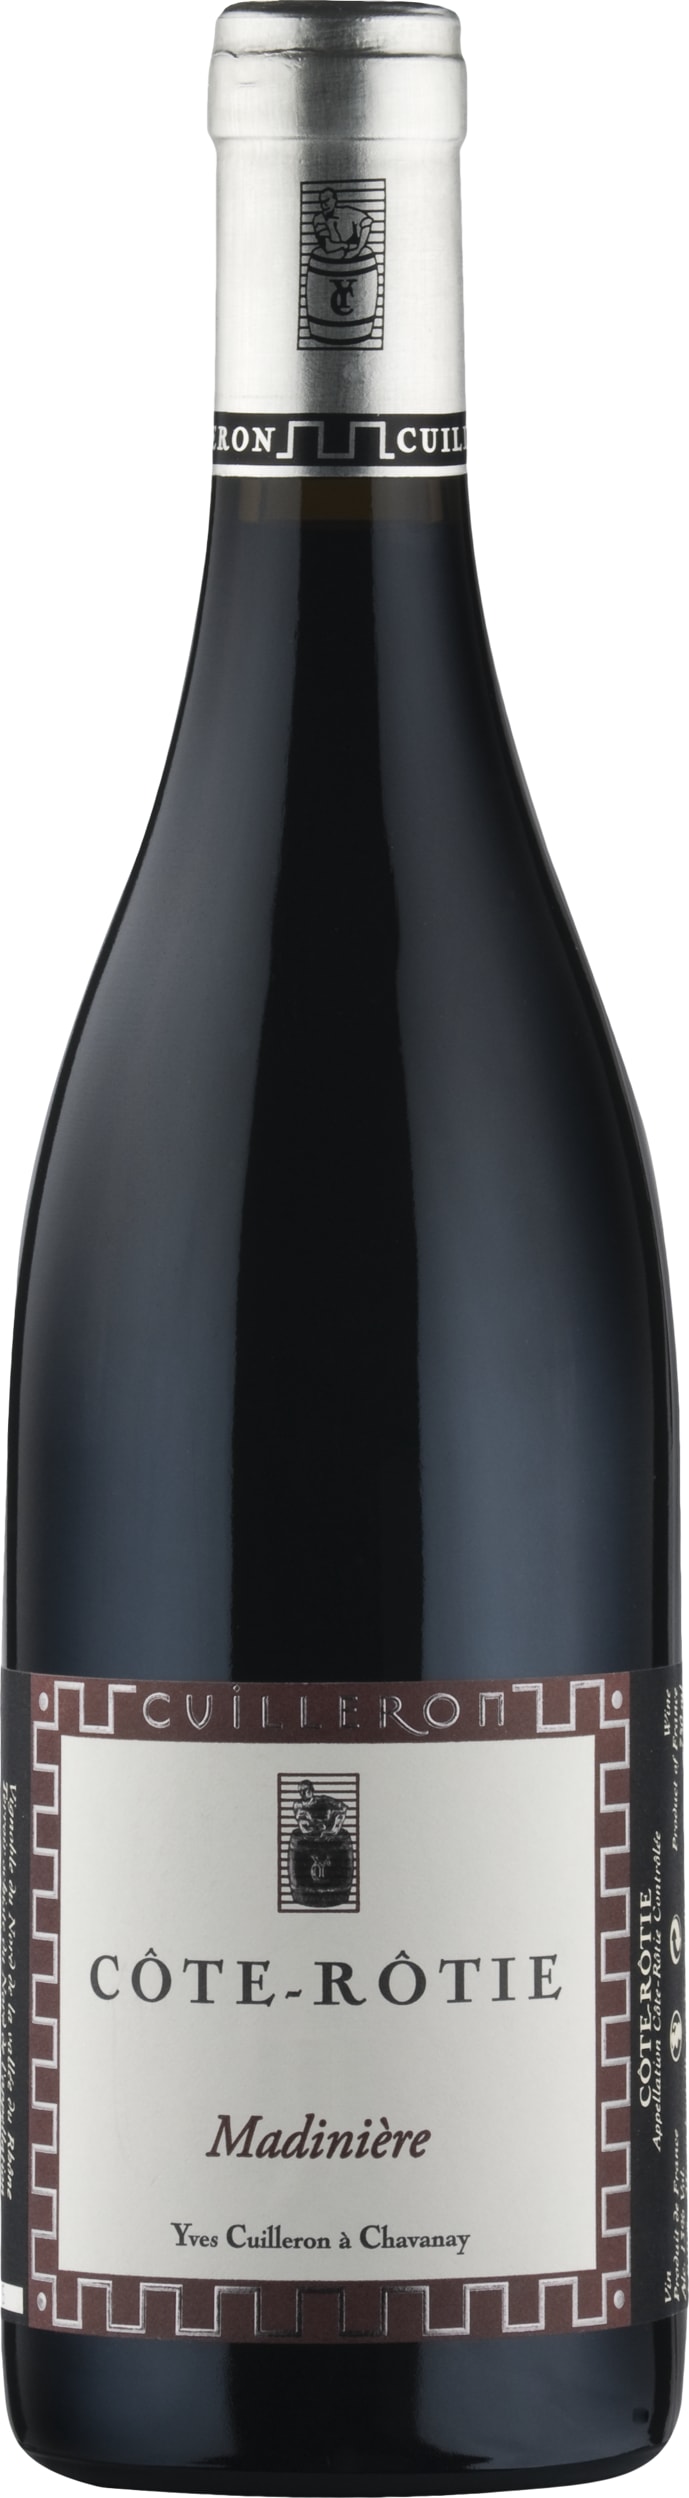 Yves Cuilleron Cote-Rotie La Madiniere 2021 75cl - Buy Yves Cuilleron Wines from GREAT WINES DIRECT wine shop